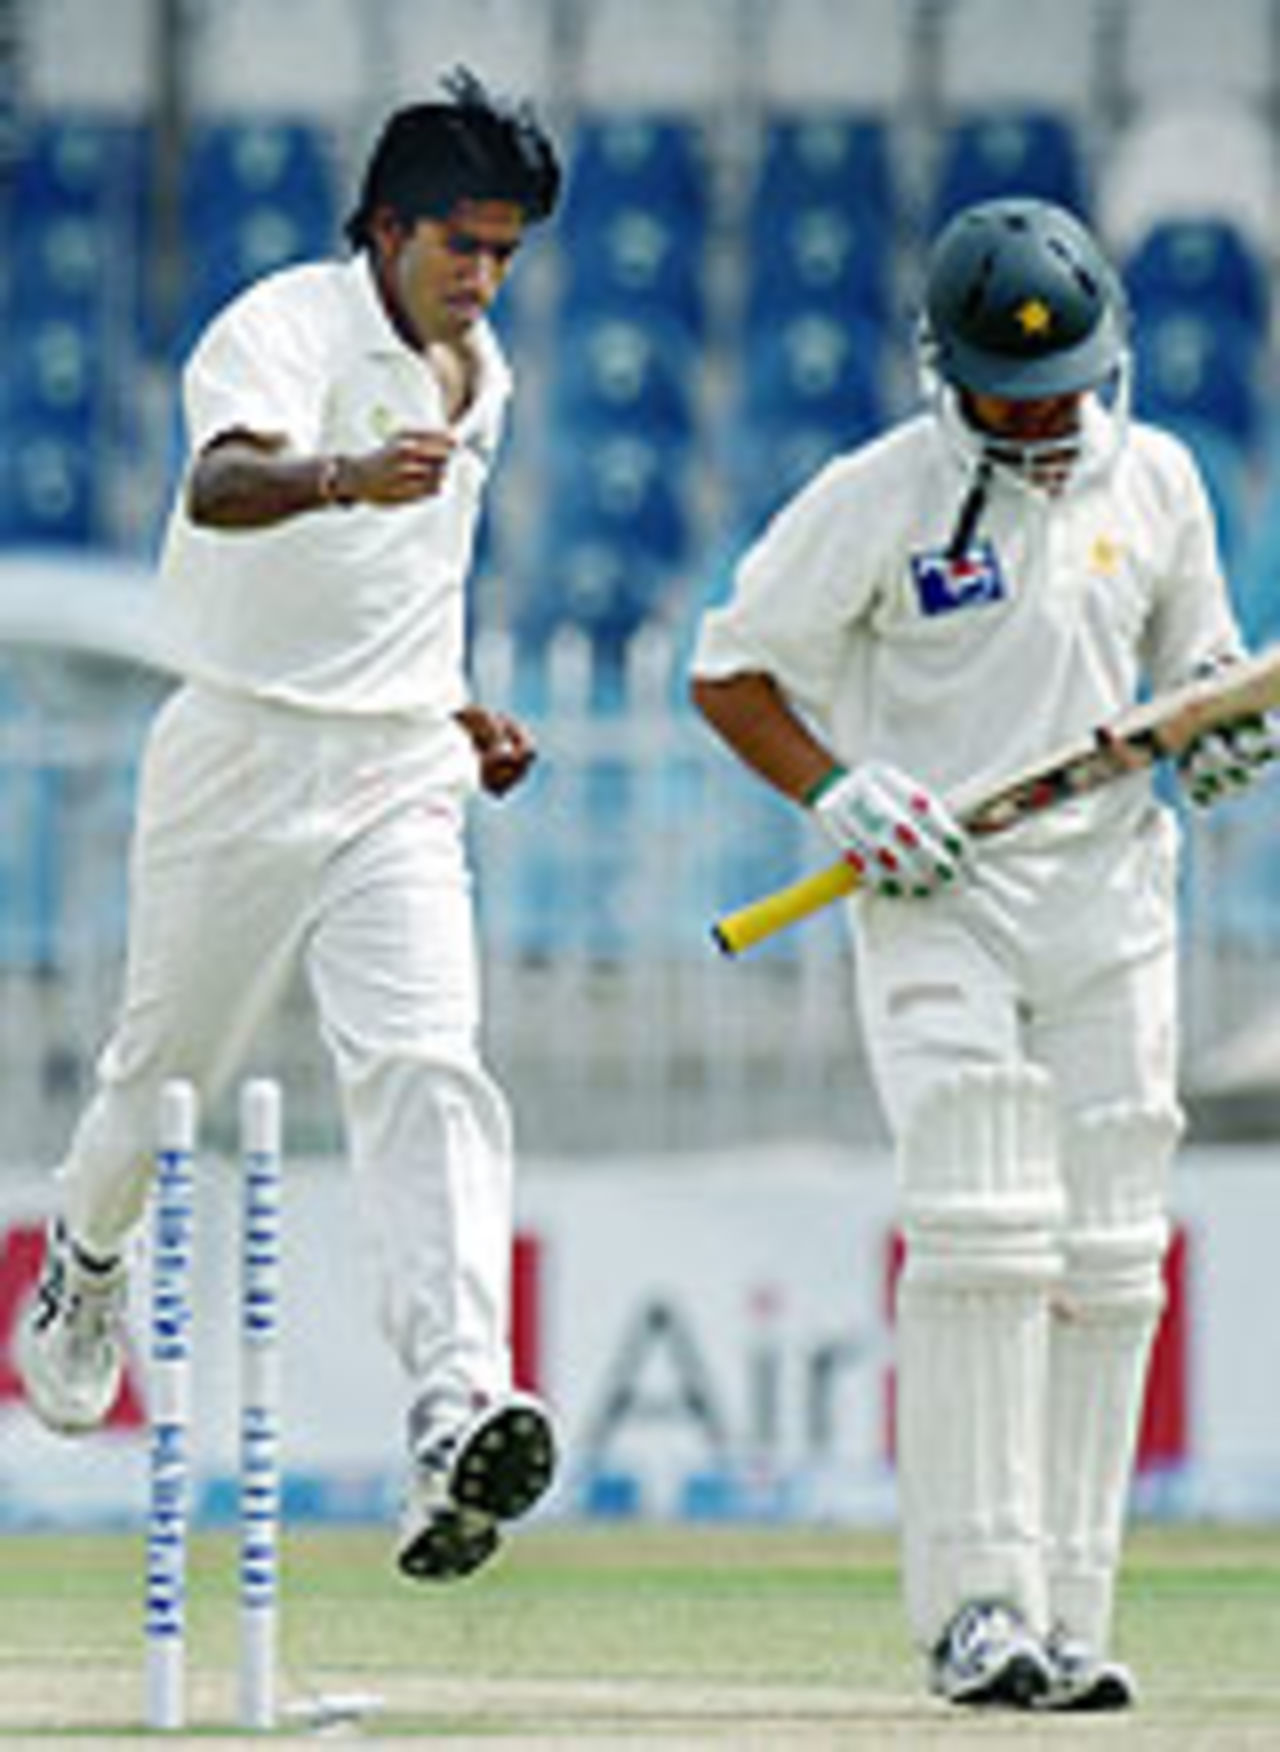 Lakshmipathy Balaji gets rid of Kamran Akmal, Pakistan v India, 3rd Test, Rawalpindi, 4th day, April 16, 2004